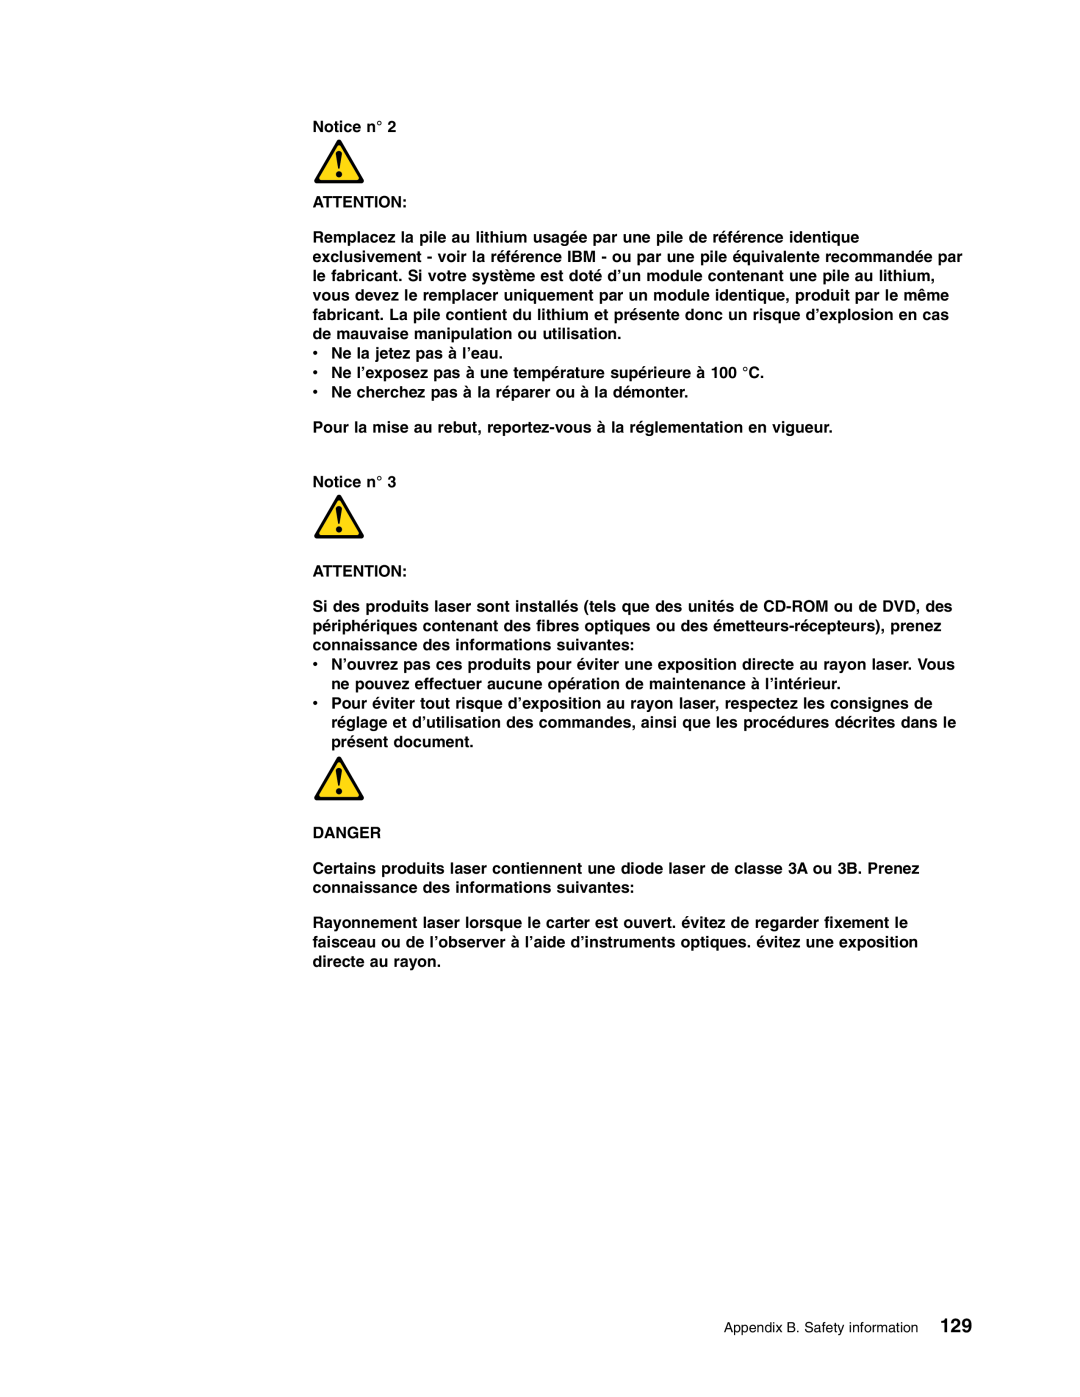 IBM HS40 manual Notice n 